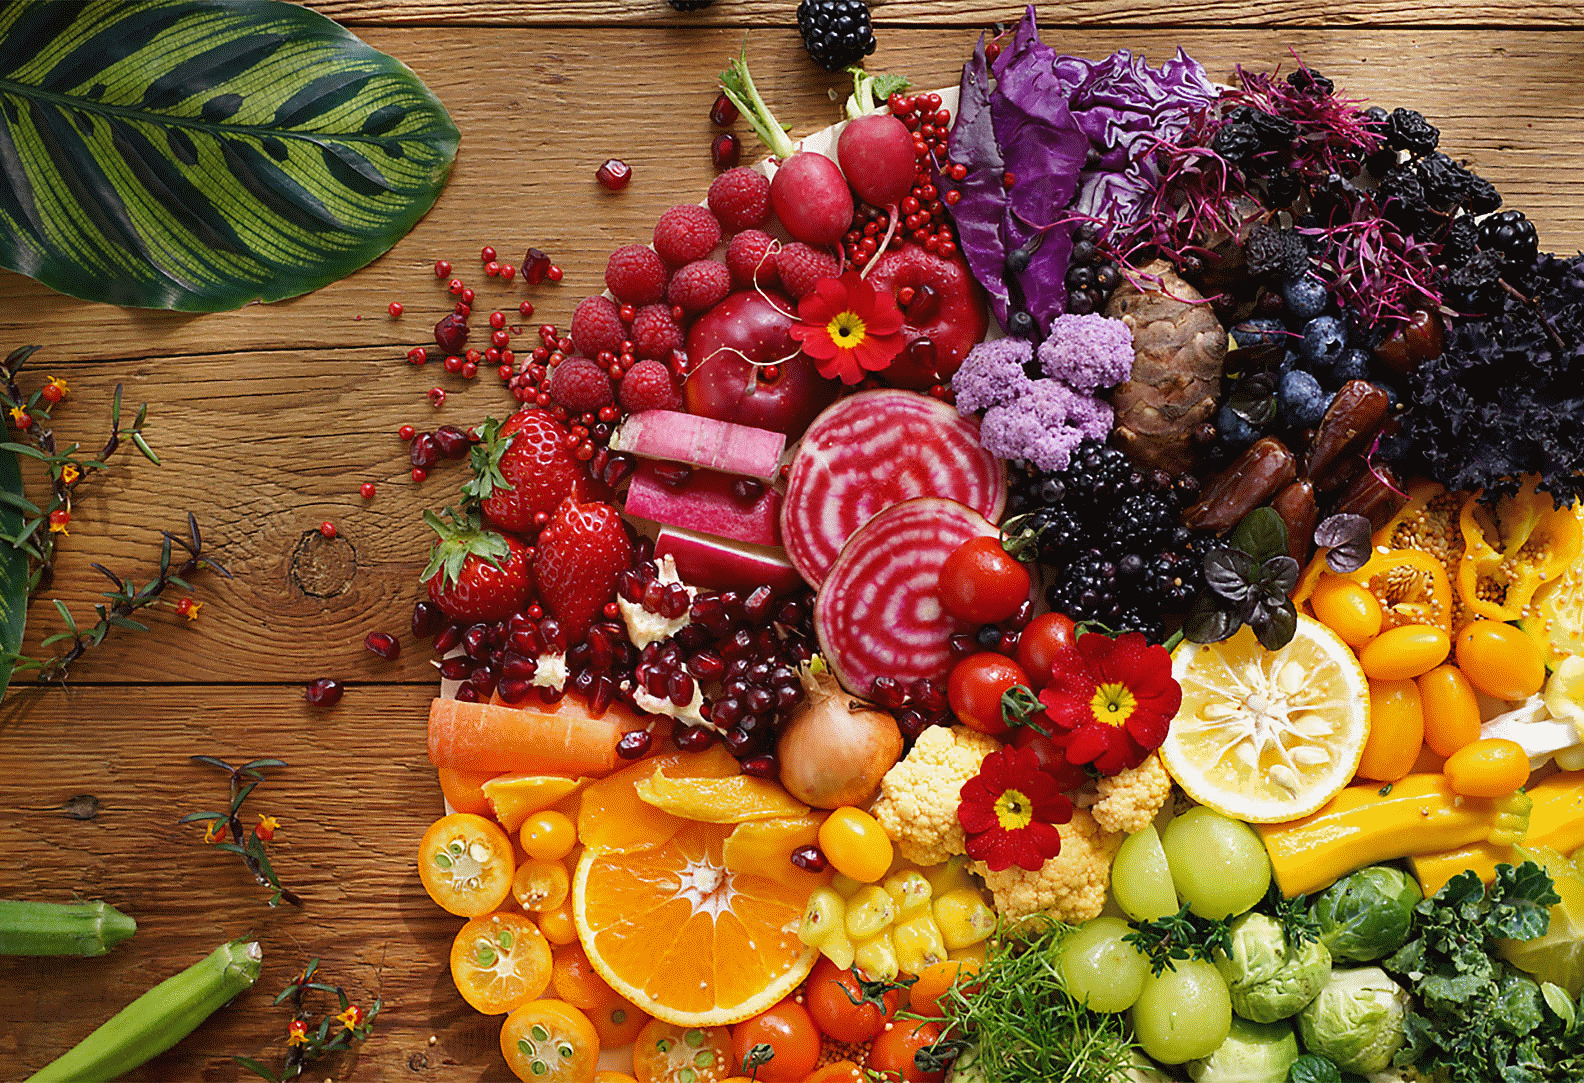 Mit diesem Objektiv aufgenommenes Bild von farbenfrohem Gemüse und bunten Früchten, bis zum Bildrand hochauflösend